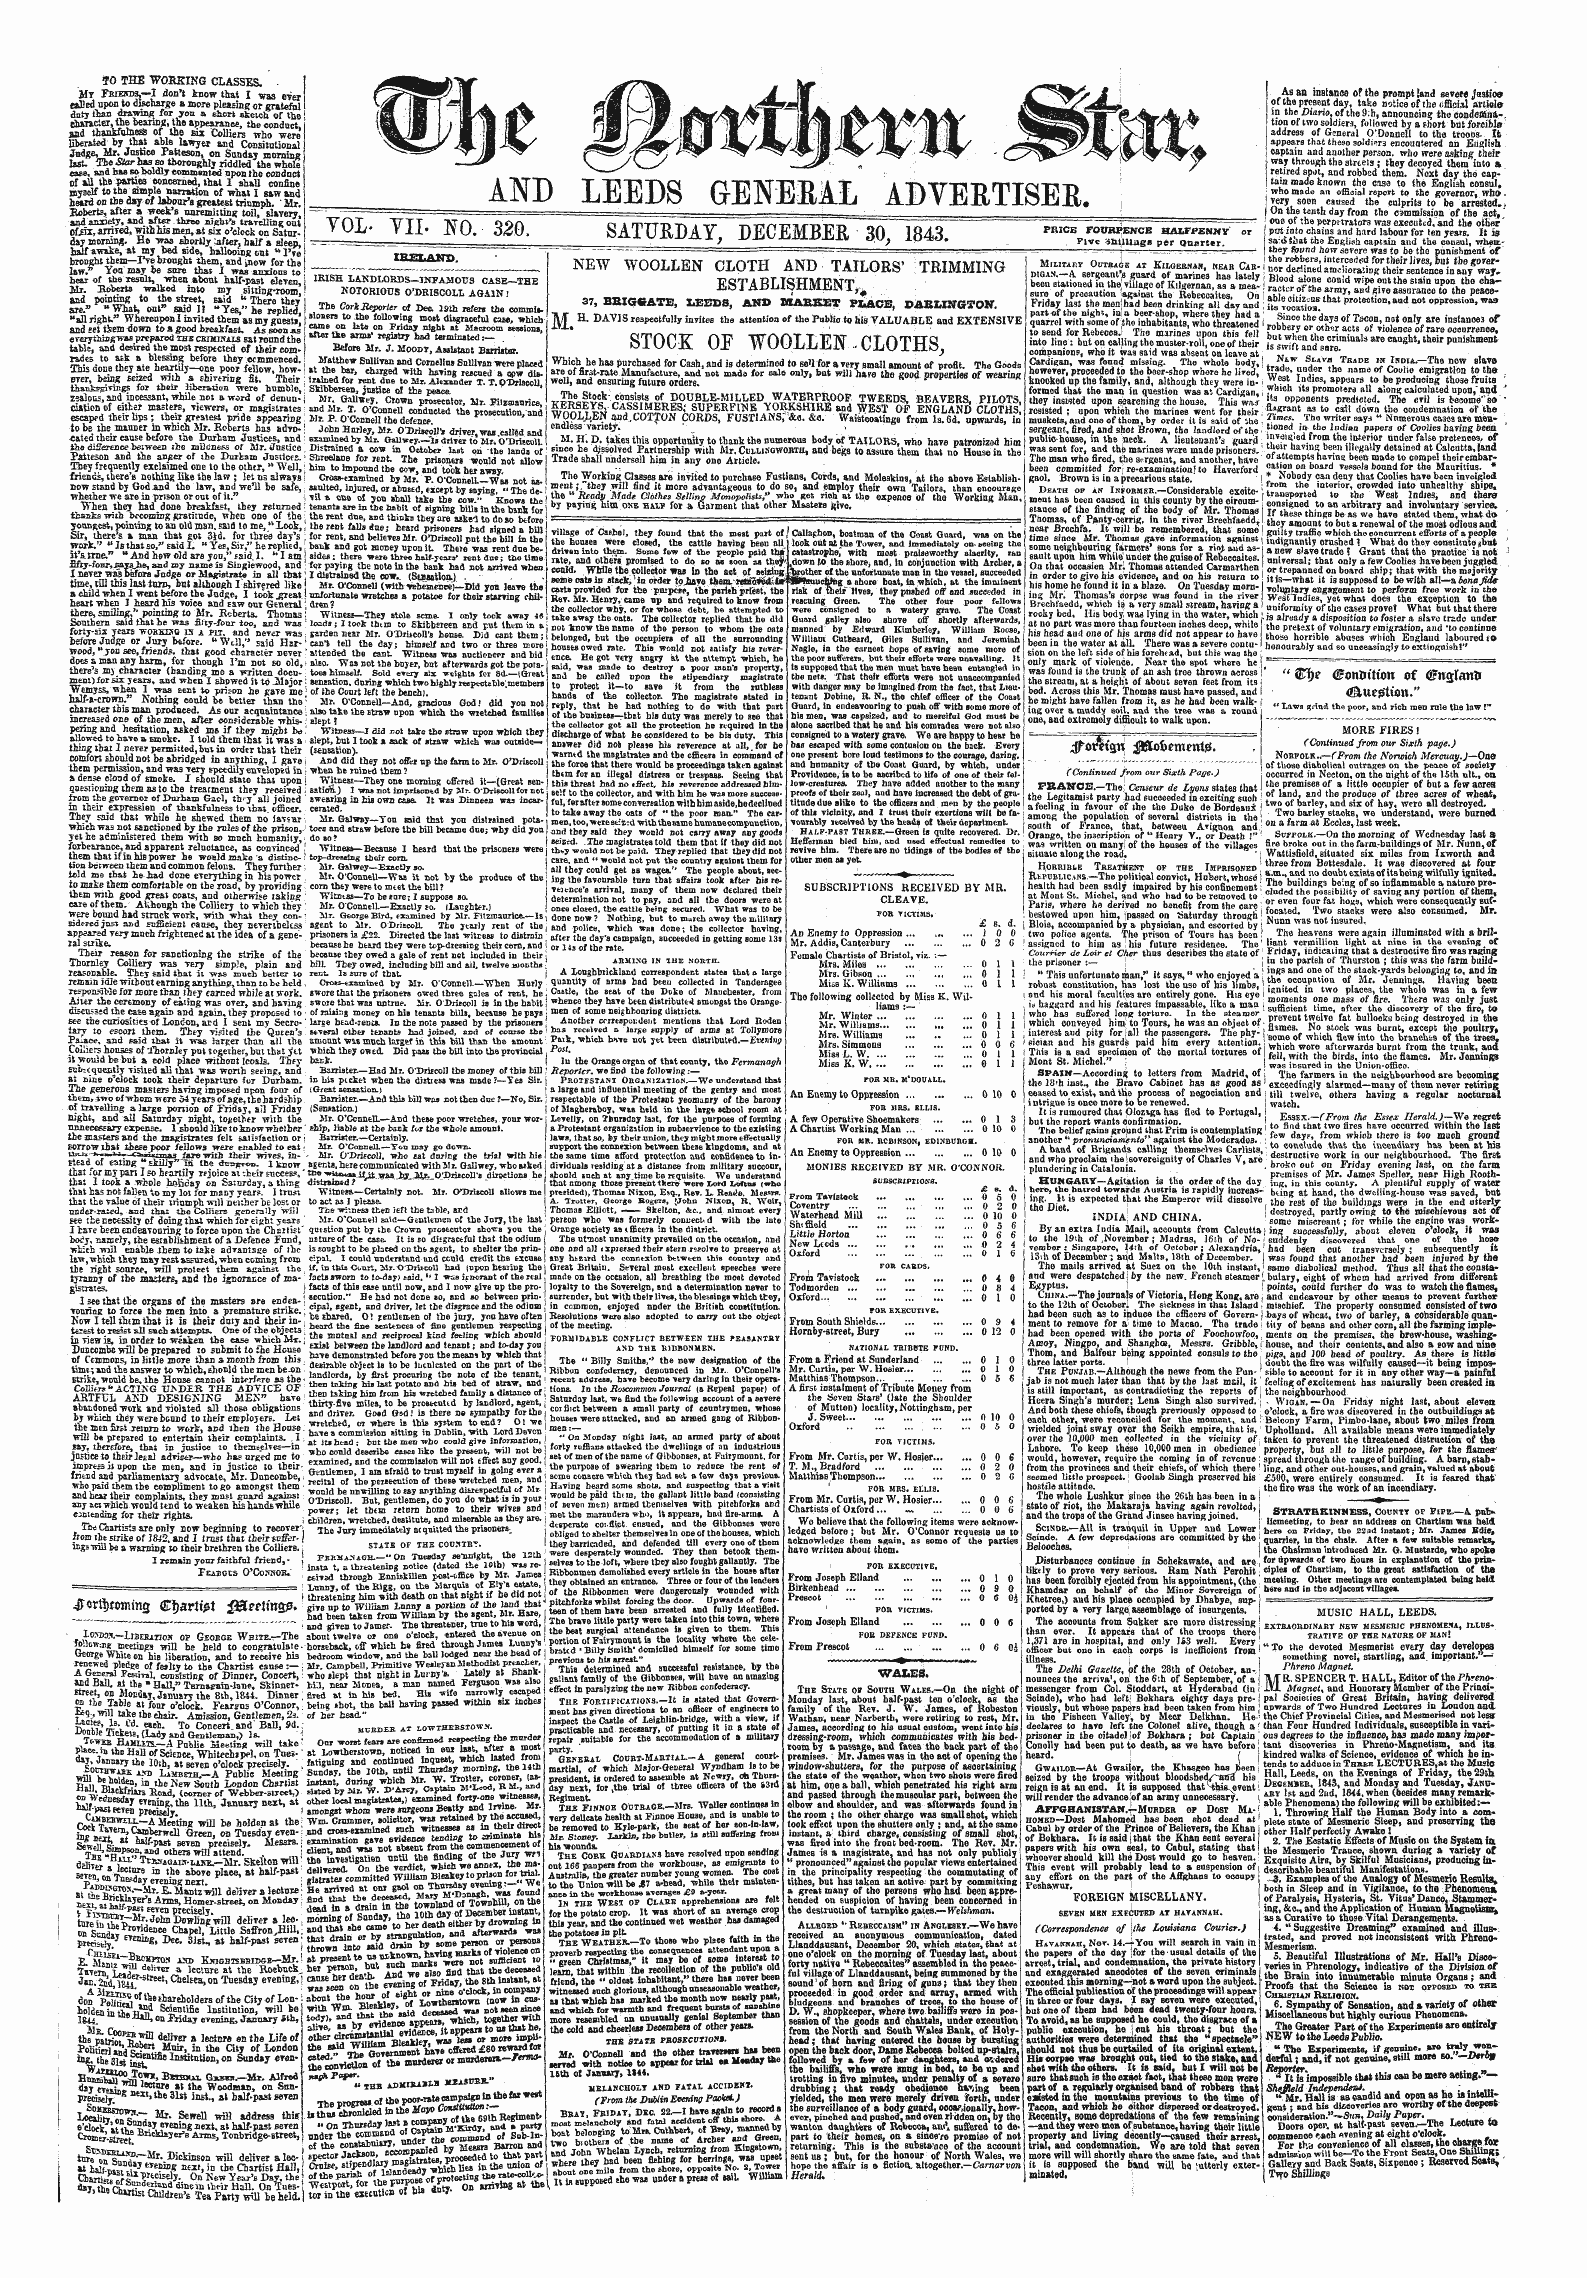 Northern Star (1837-1852): jS F Y, 1st edition - ^Rftjcobimg &Lt;£I)Arit&Gt;T $&Ettm&.